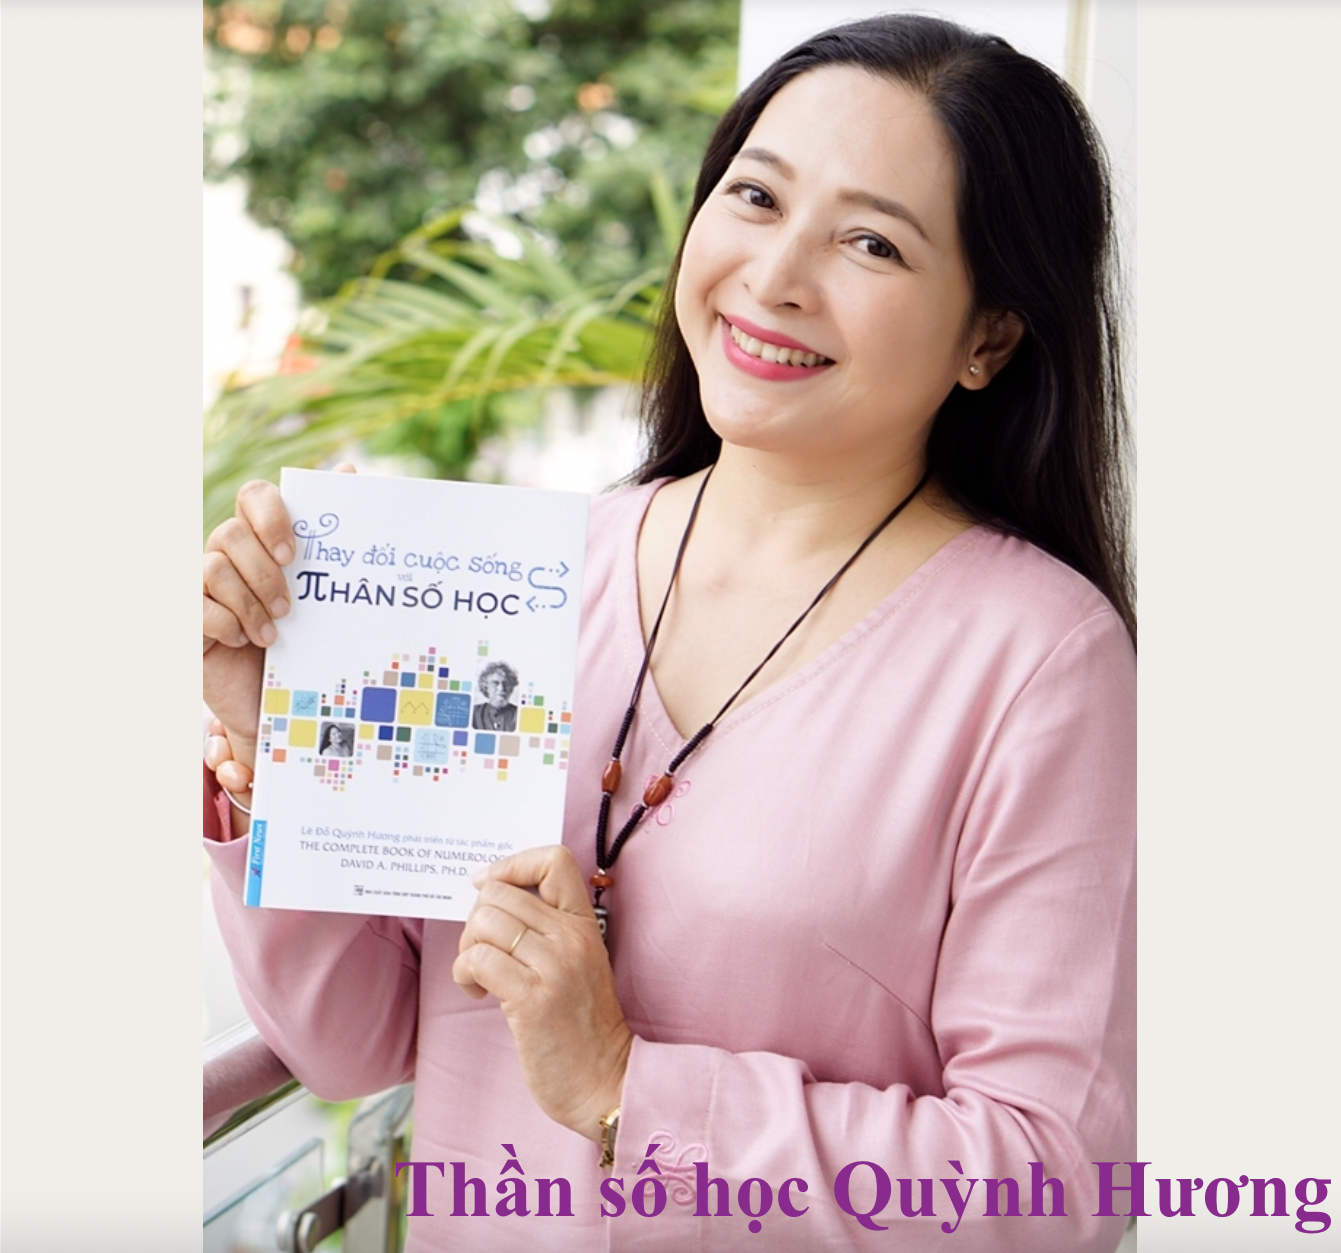 Thần số học Quỳnh Hương – Người đi đầu Thần số học Pitago số 1 ở Việt Nam